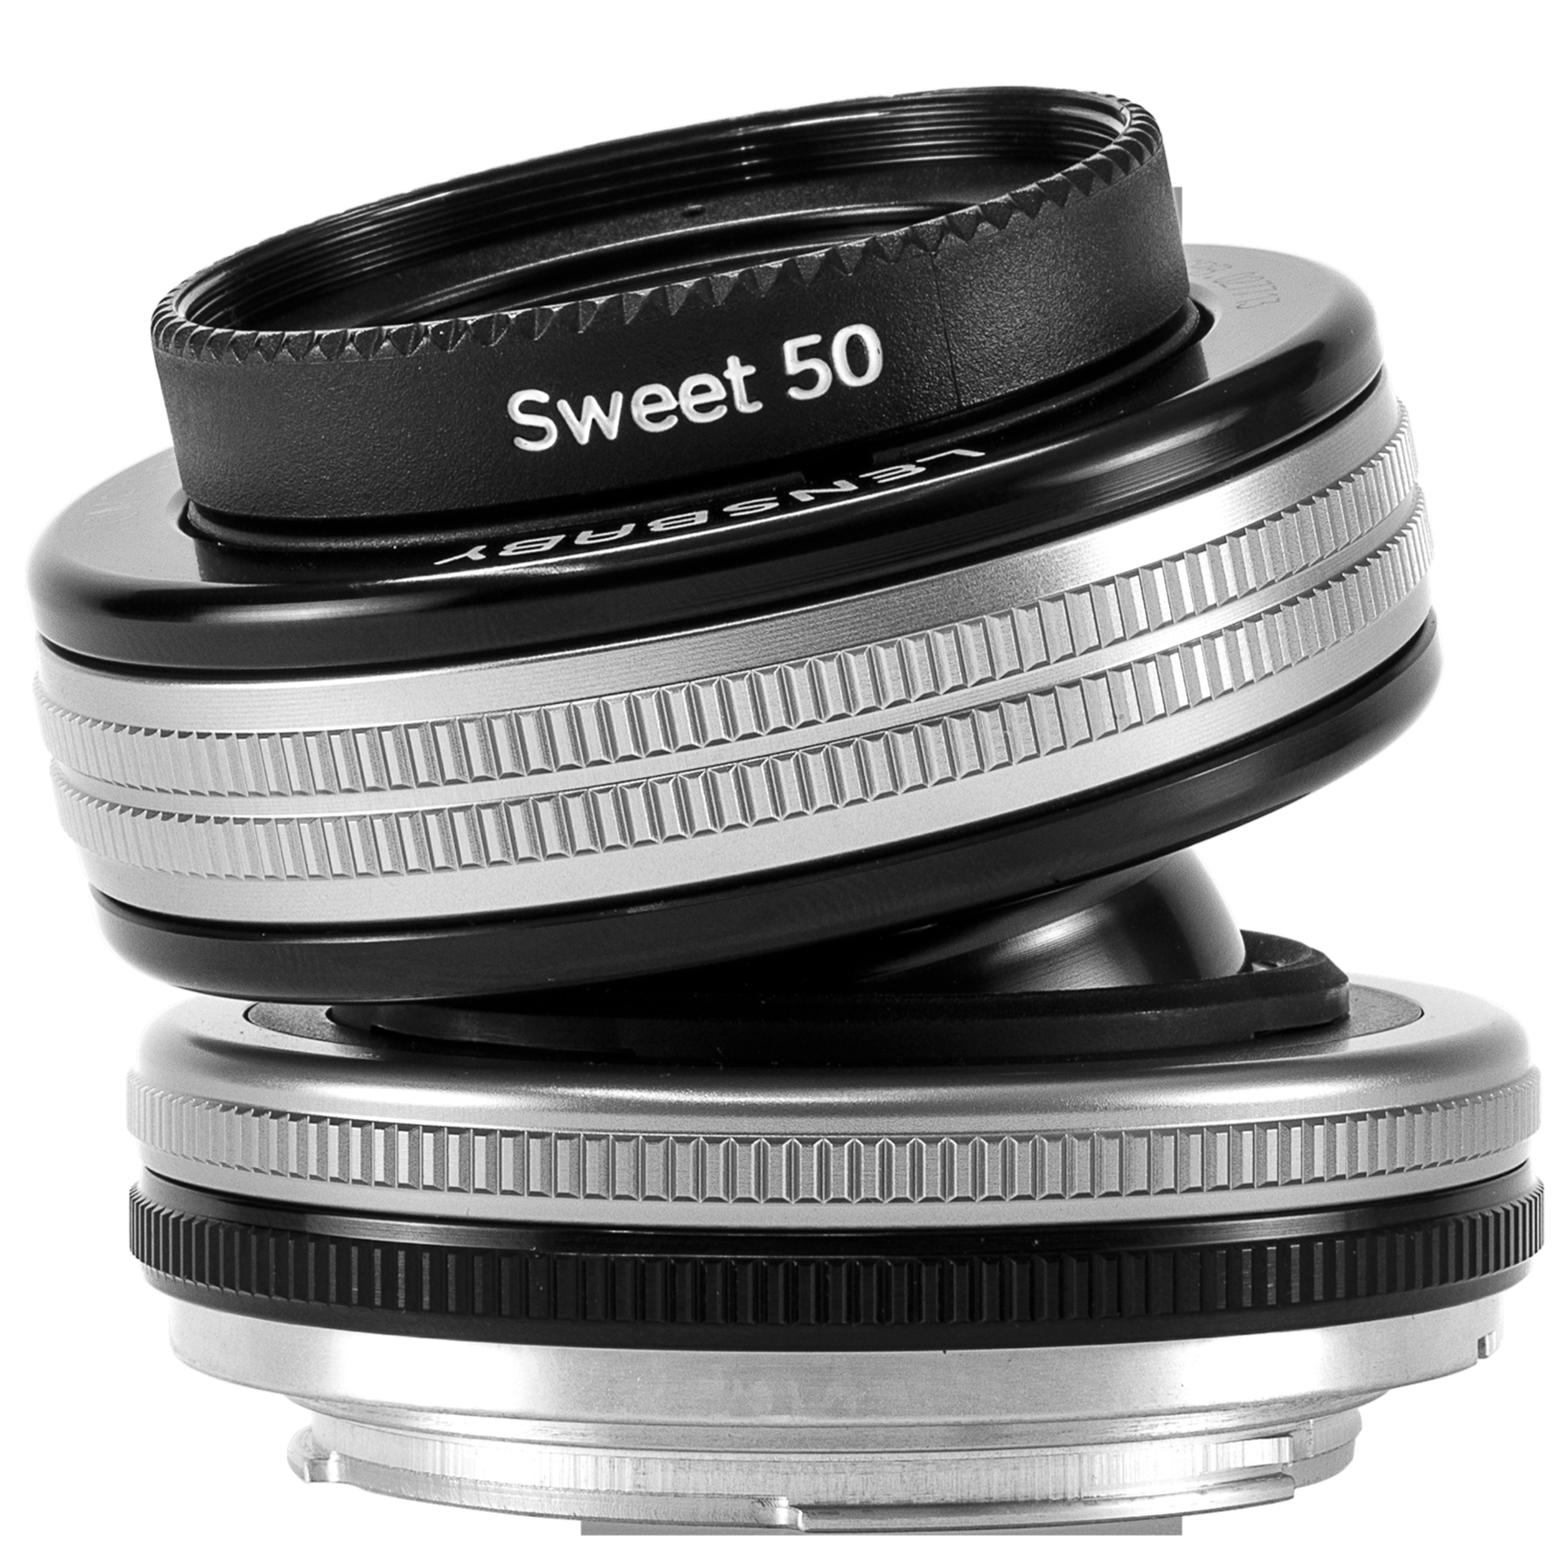 worstelen voorspelling wetenschapper Composer Pro II With Sweet 50 Optic Camera Lens | Lensbaby